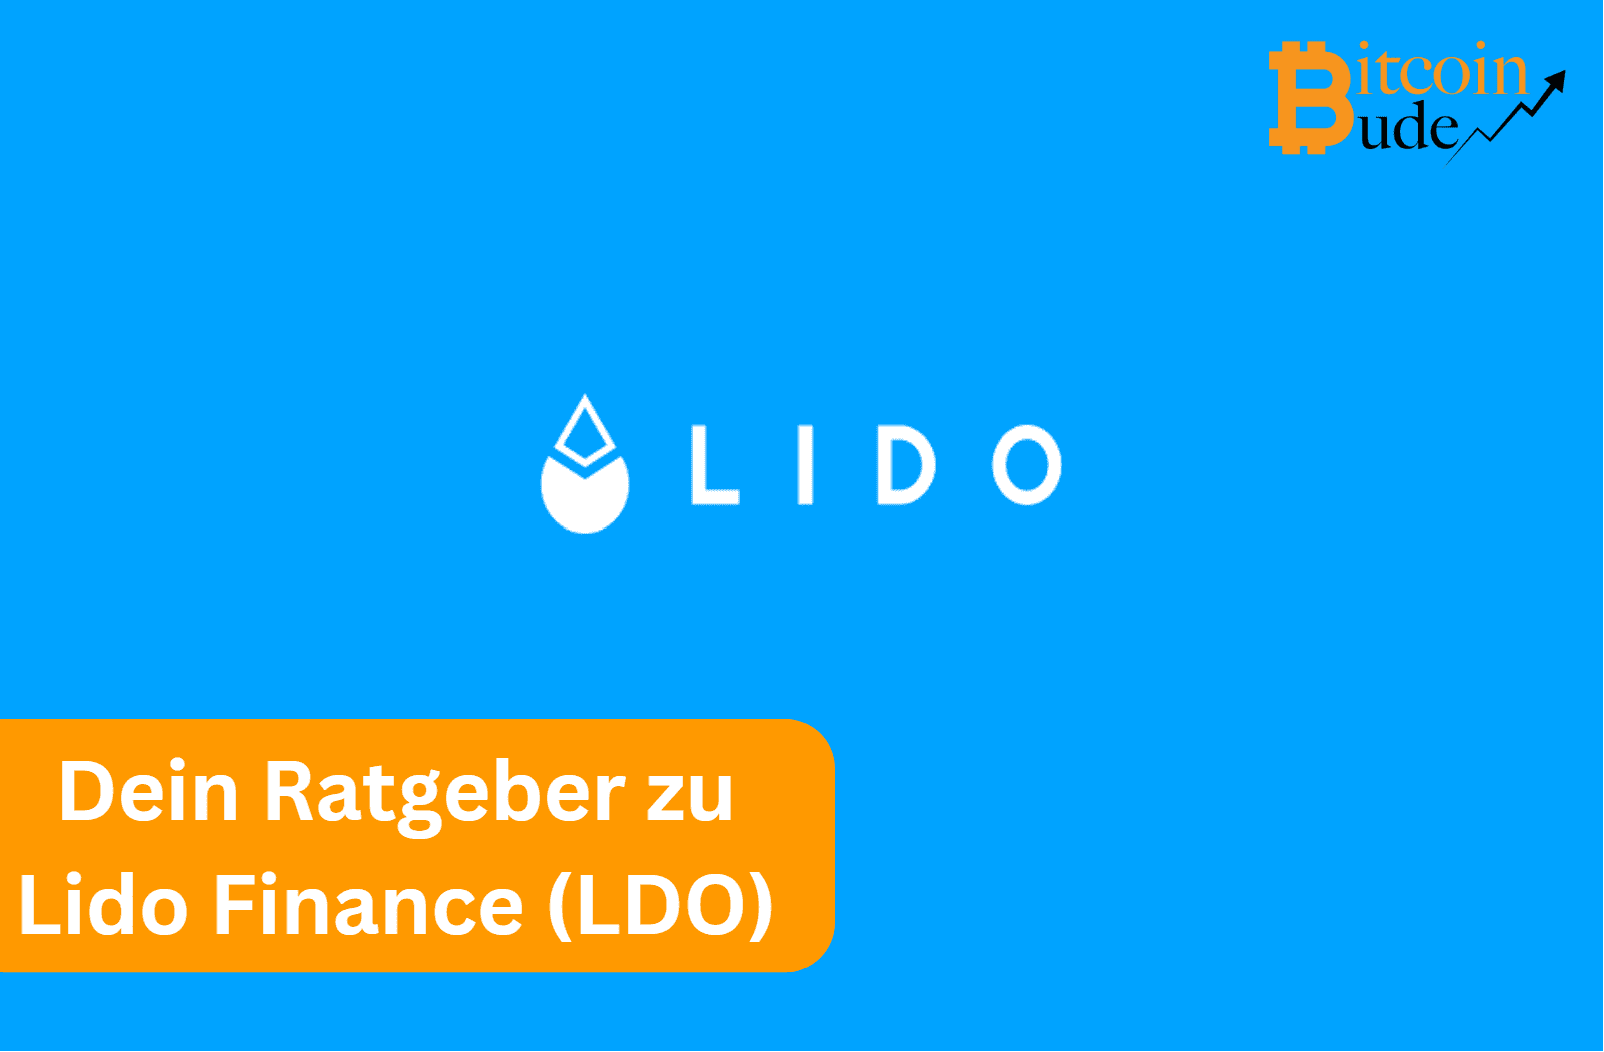 Das Titelbild zu dem Lido Finance (LDO) Ratgeber